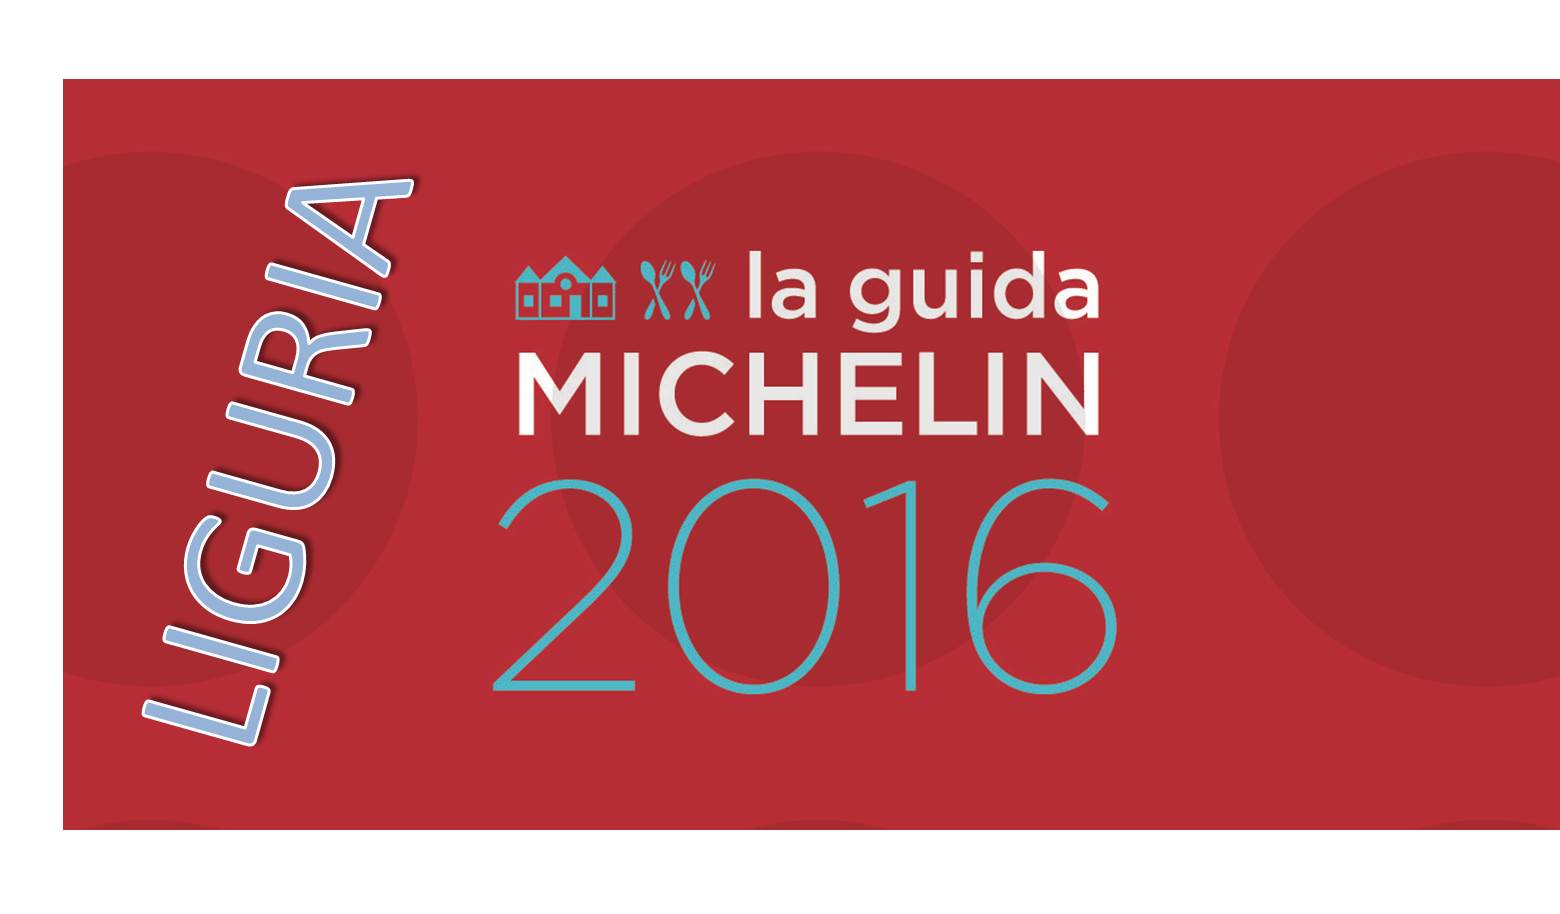 Migliori ristoranti Michelin 2016 in Liguria